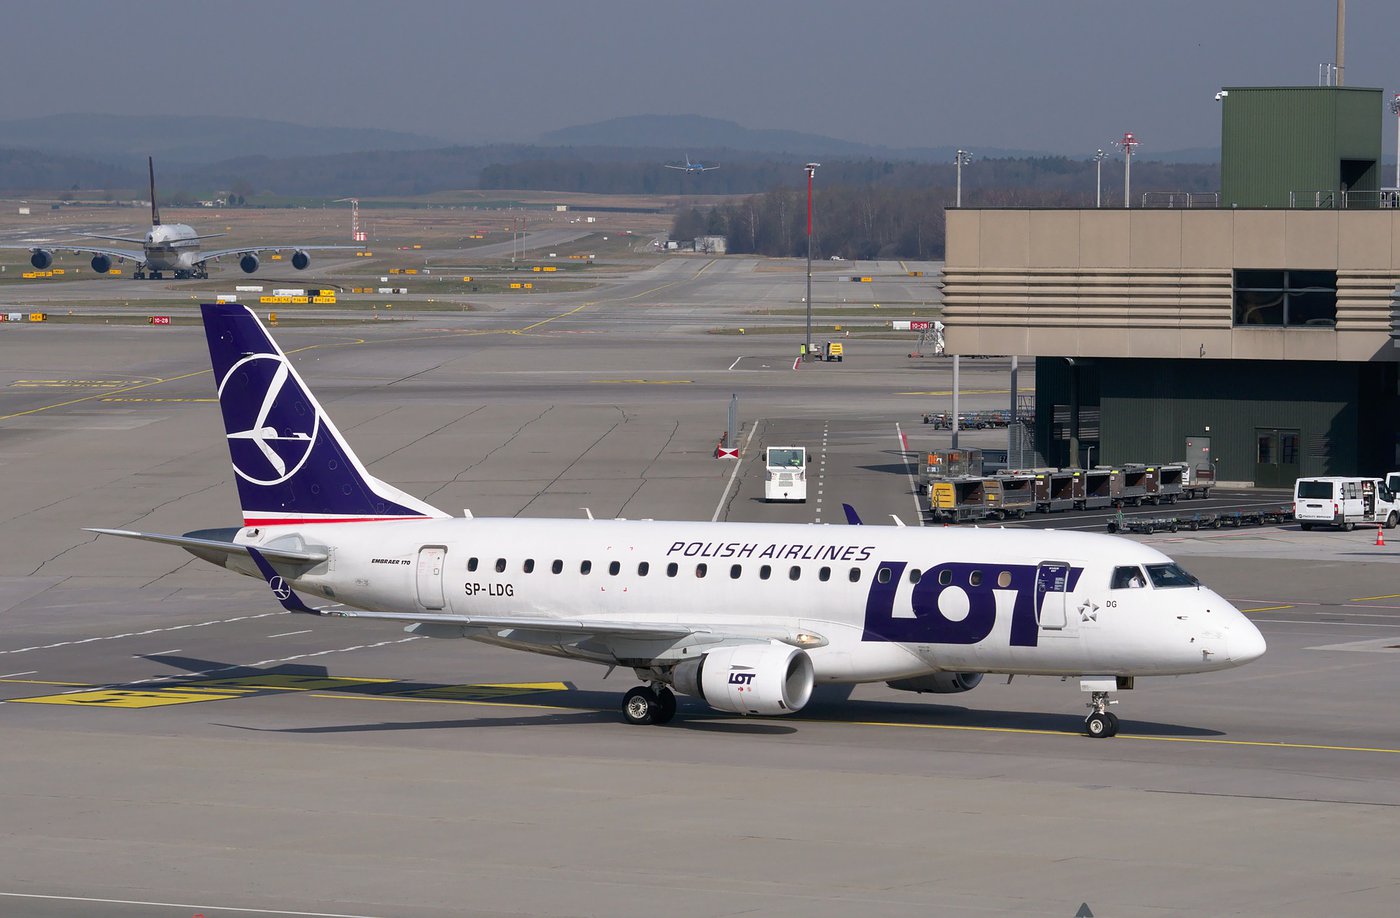 LOT Polish Airlines – Polskie Linie Lotnicze